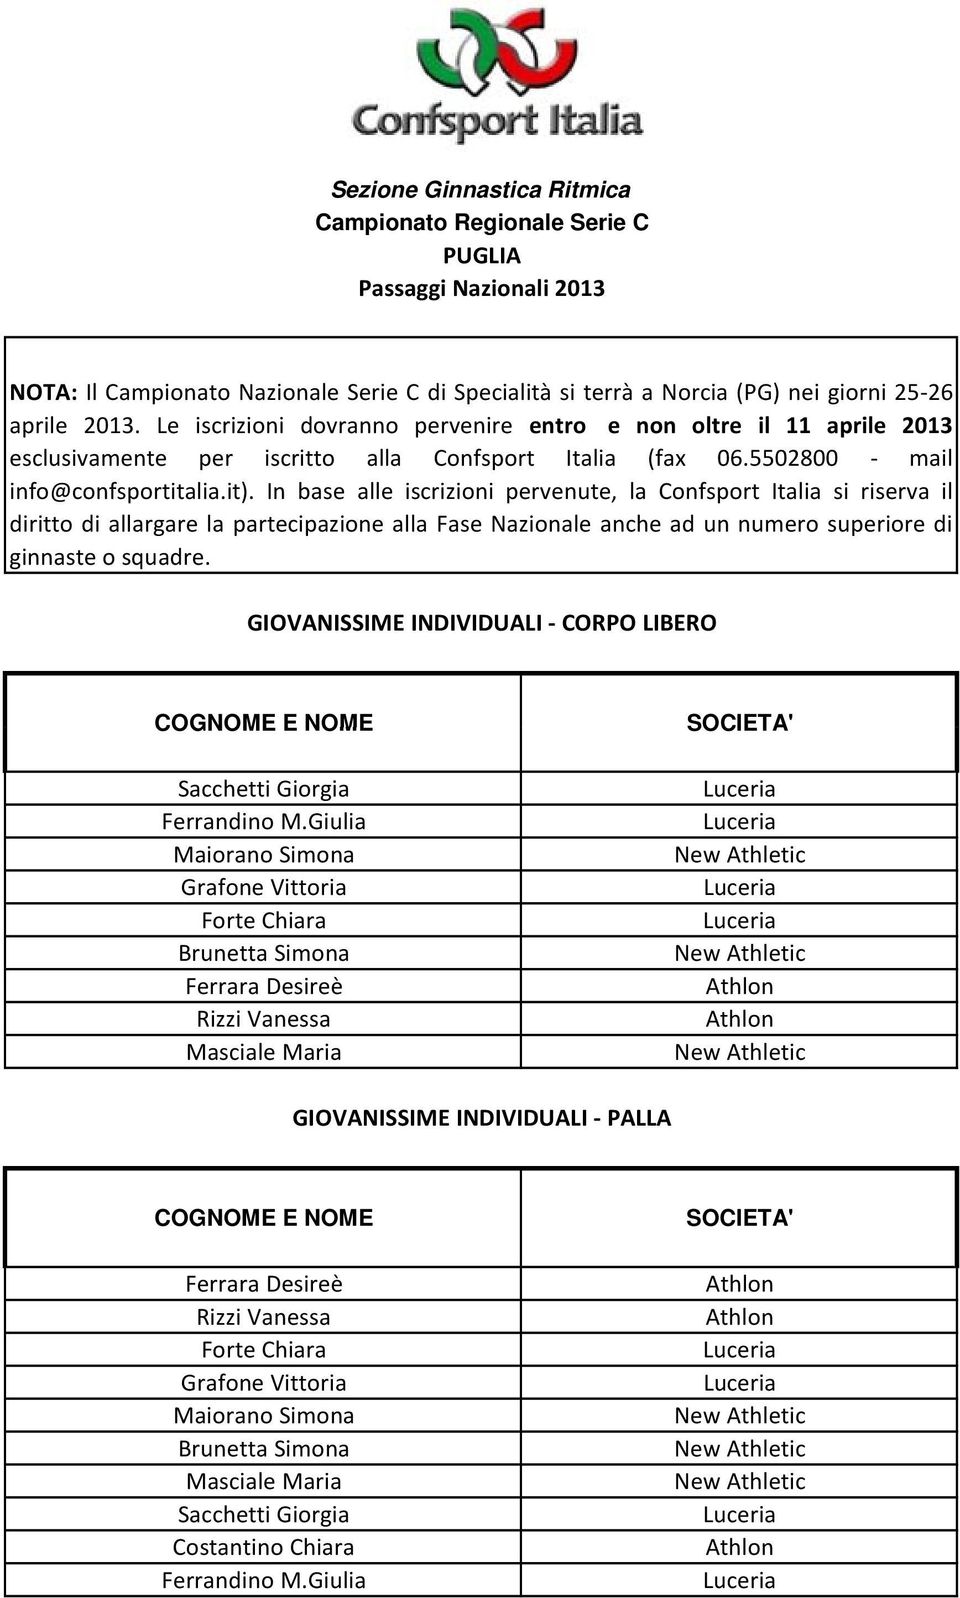 In base alle iscrizioni pervenute, la Confsport Italia si riserva il diritto di allargare la partecipazione alla Fase Nazionale anche ad un numero superiore di ginnaste o squadre.